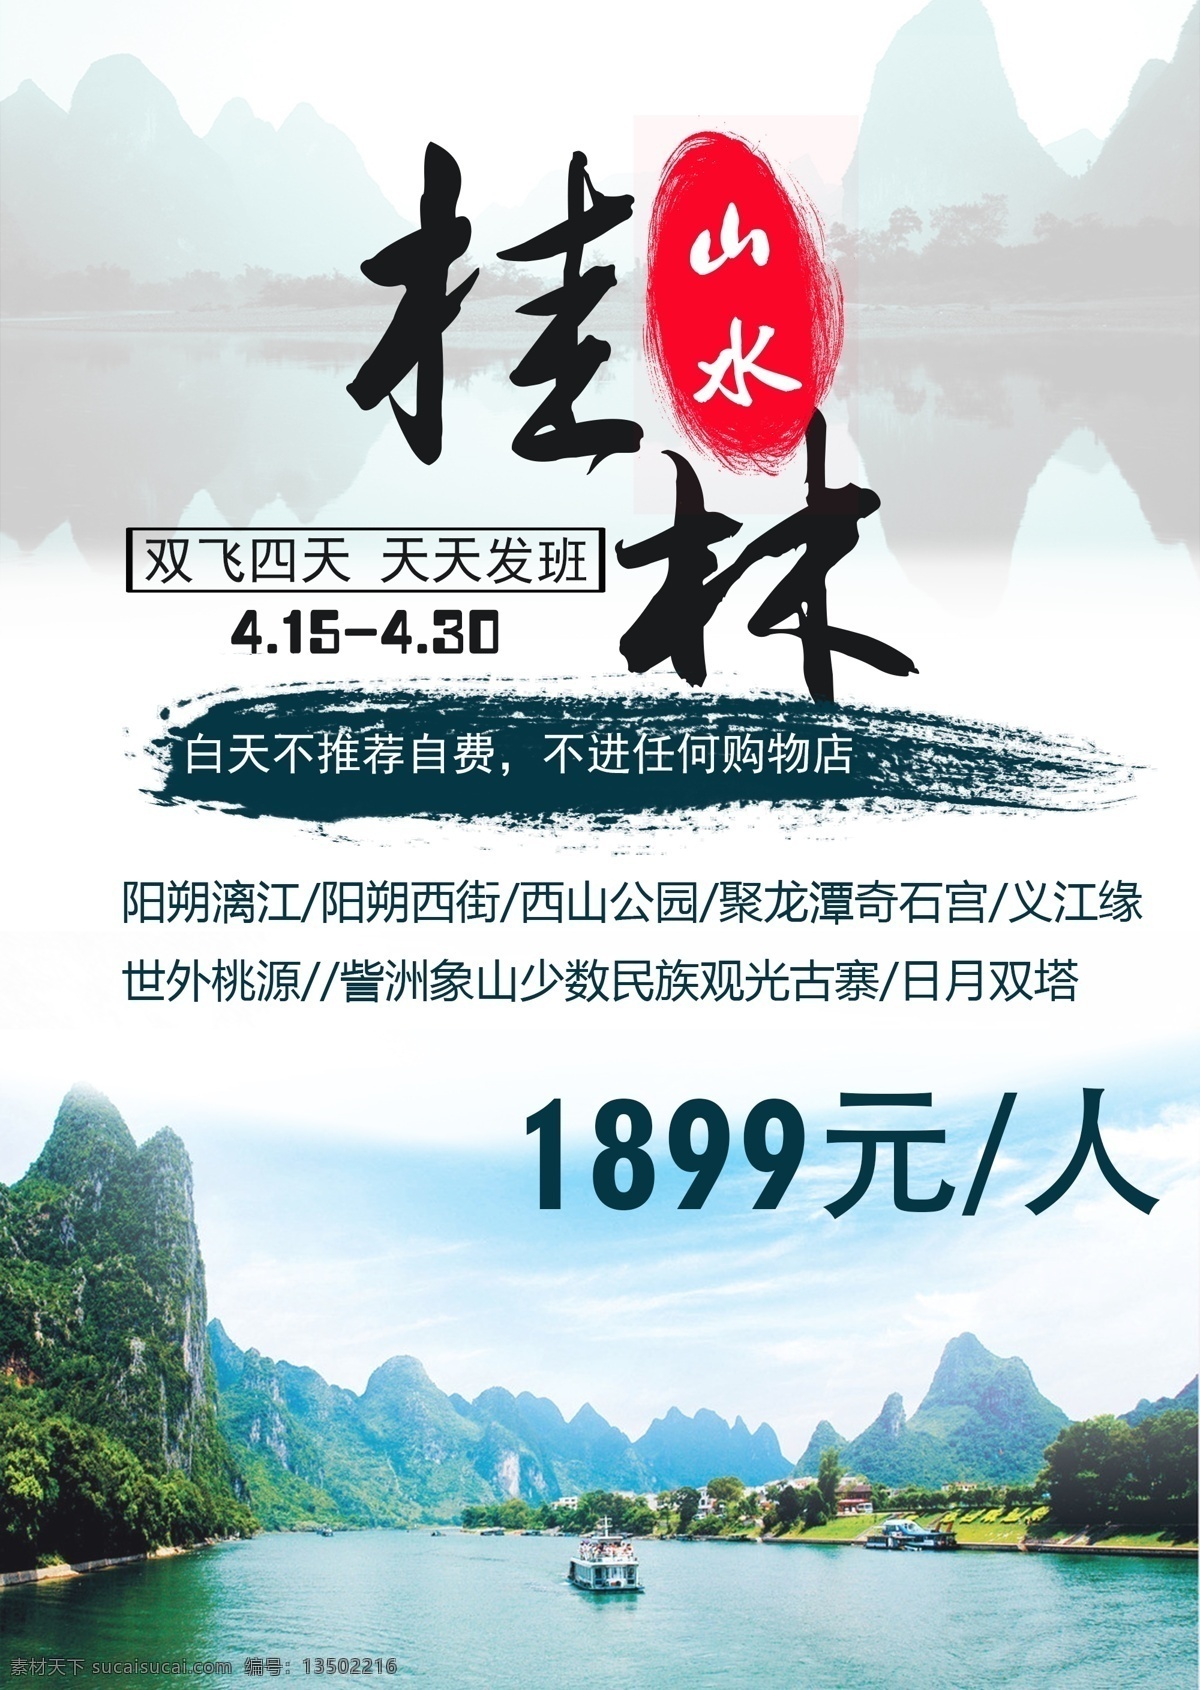 桂林山水 桂林 山水 旅游 旅行 宣传单 dm宣传单